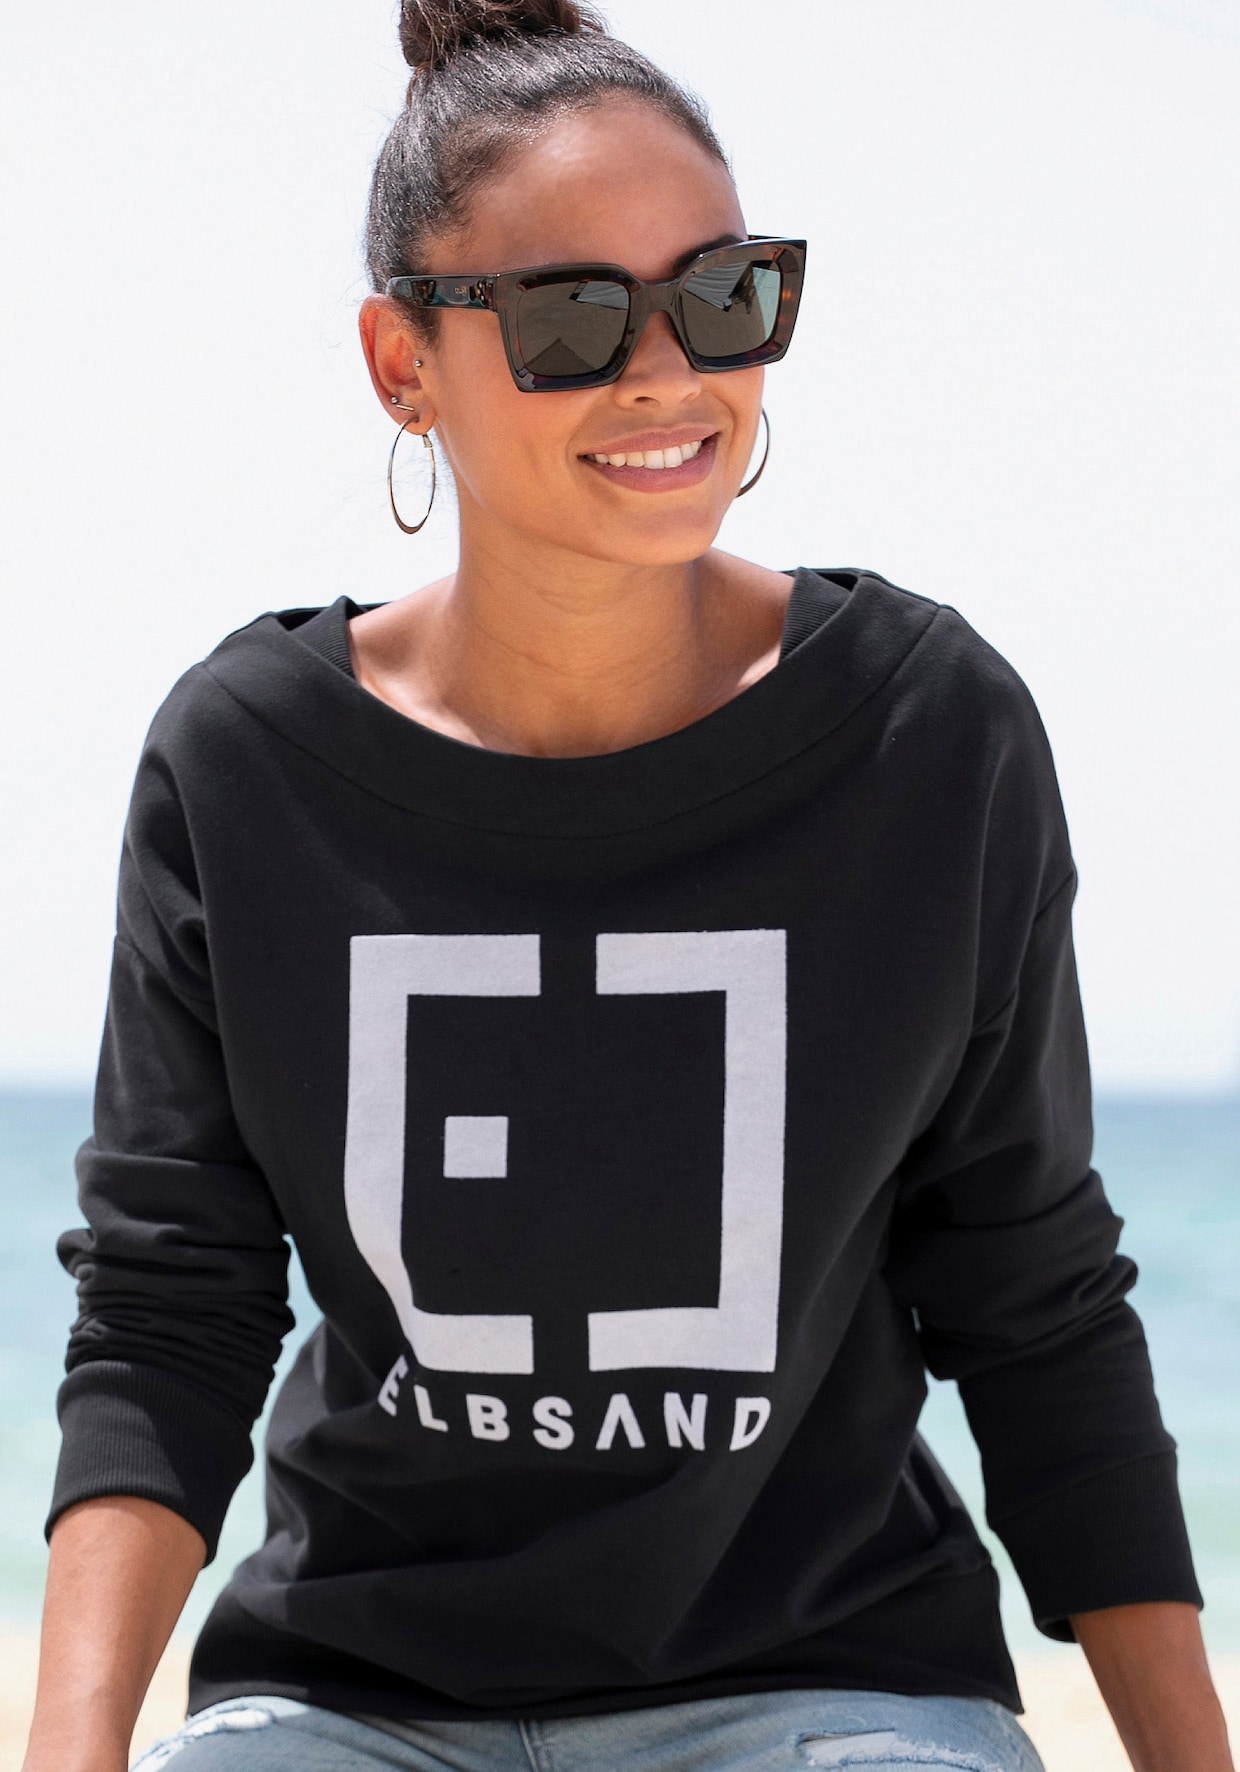 Elbsand Sweatshirt - zwart